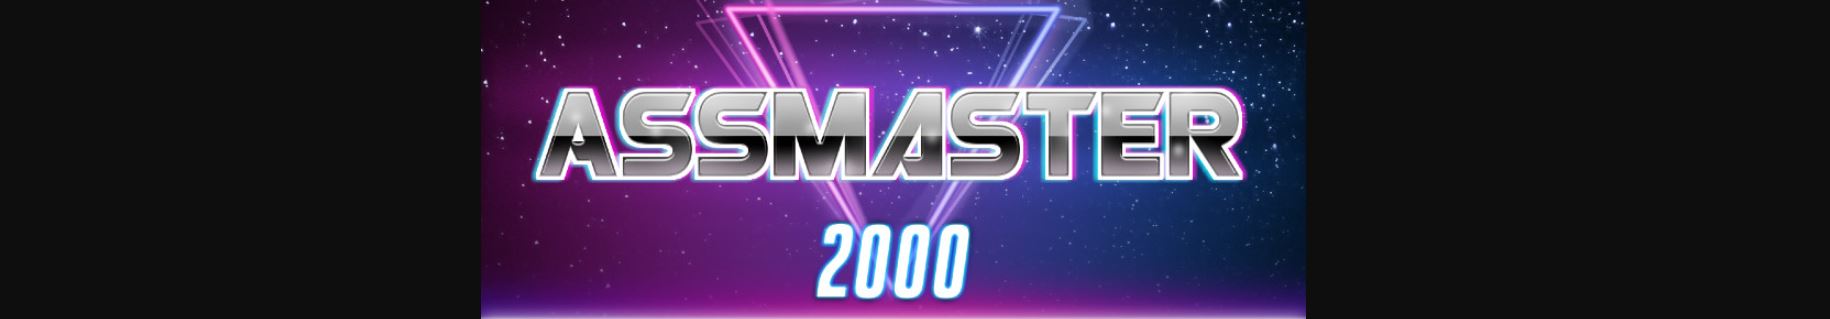 AssMaster2000 banner